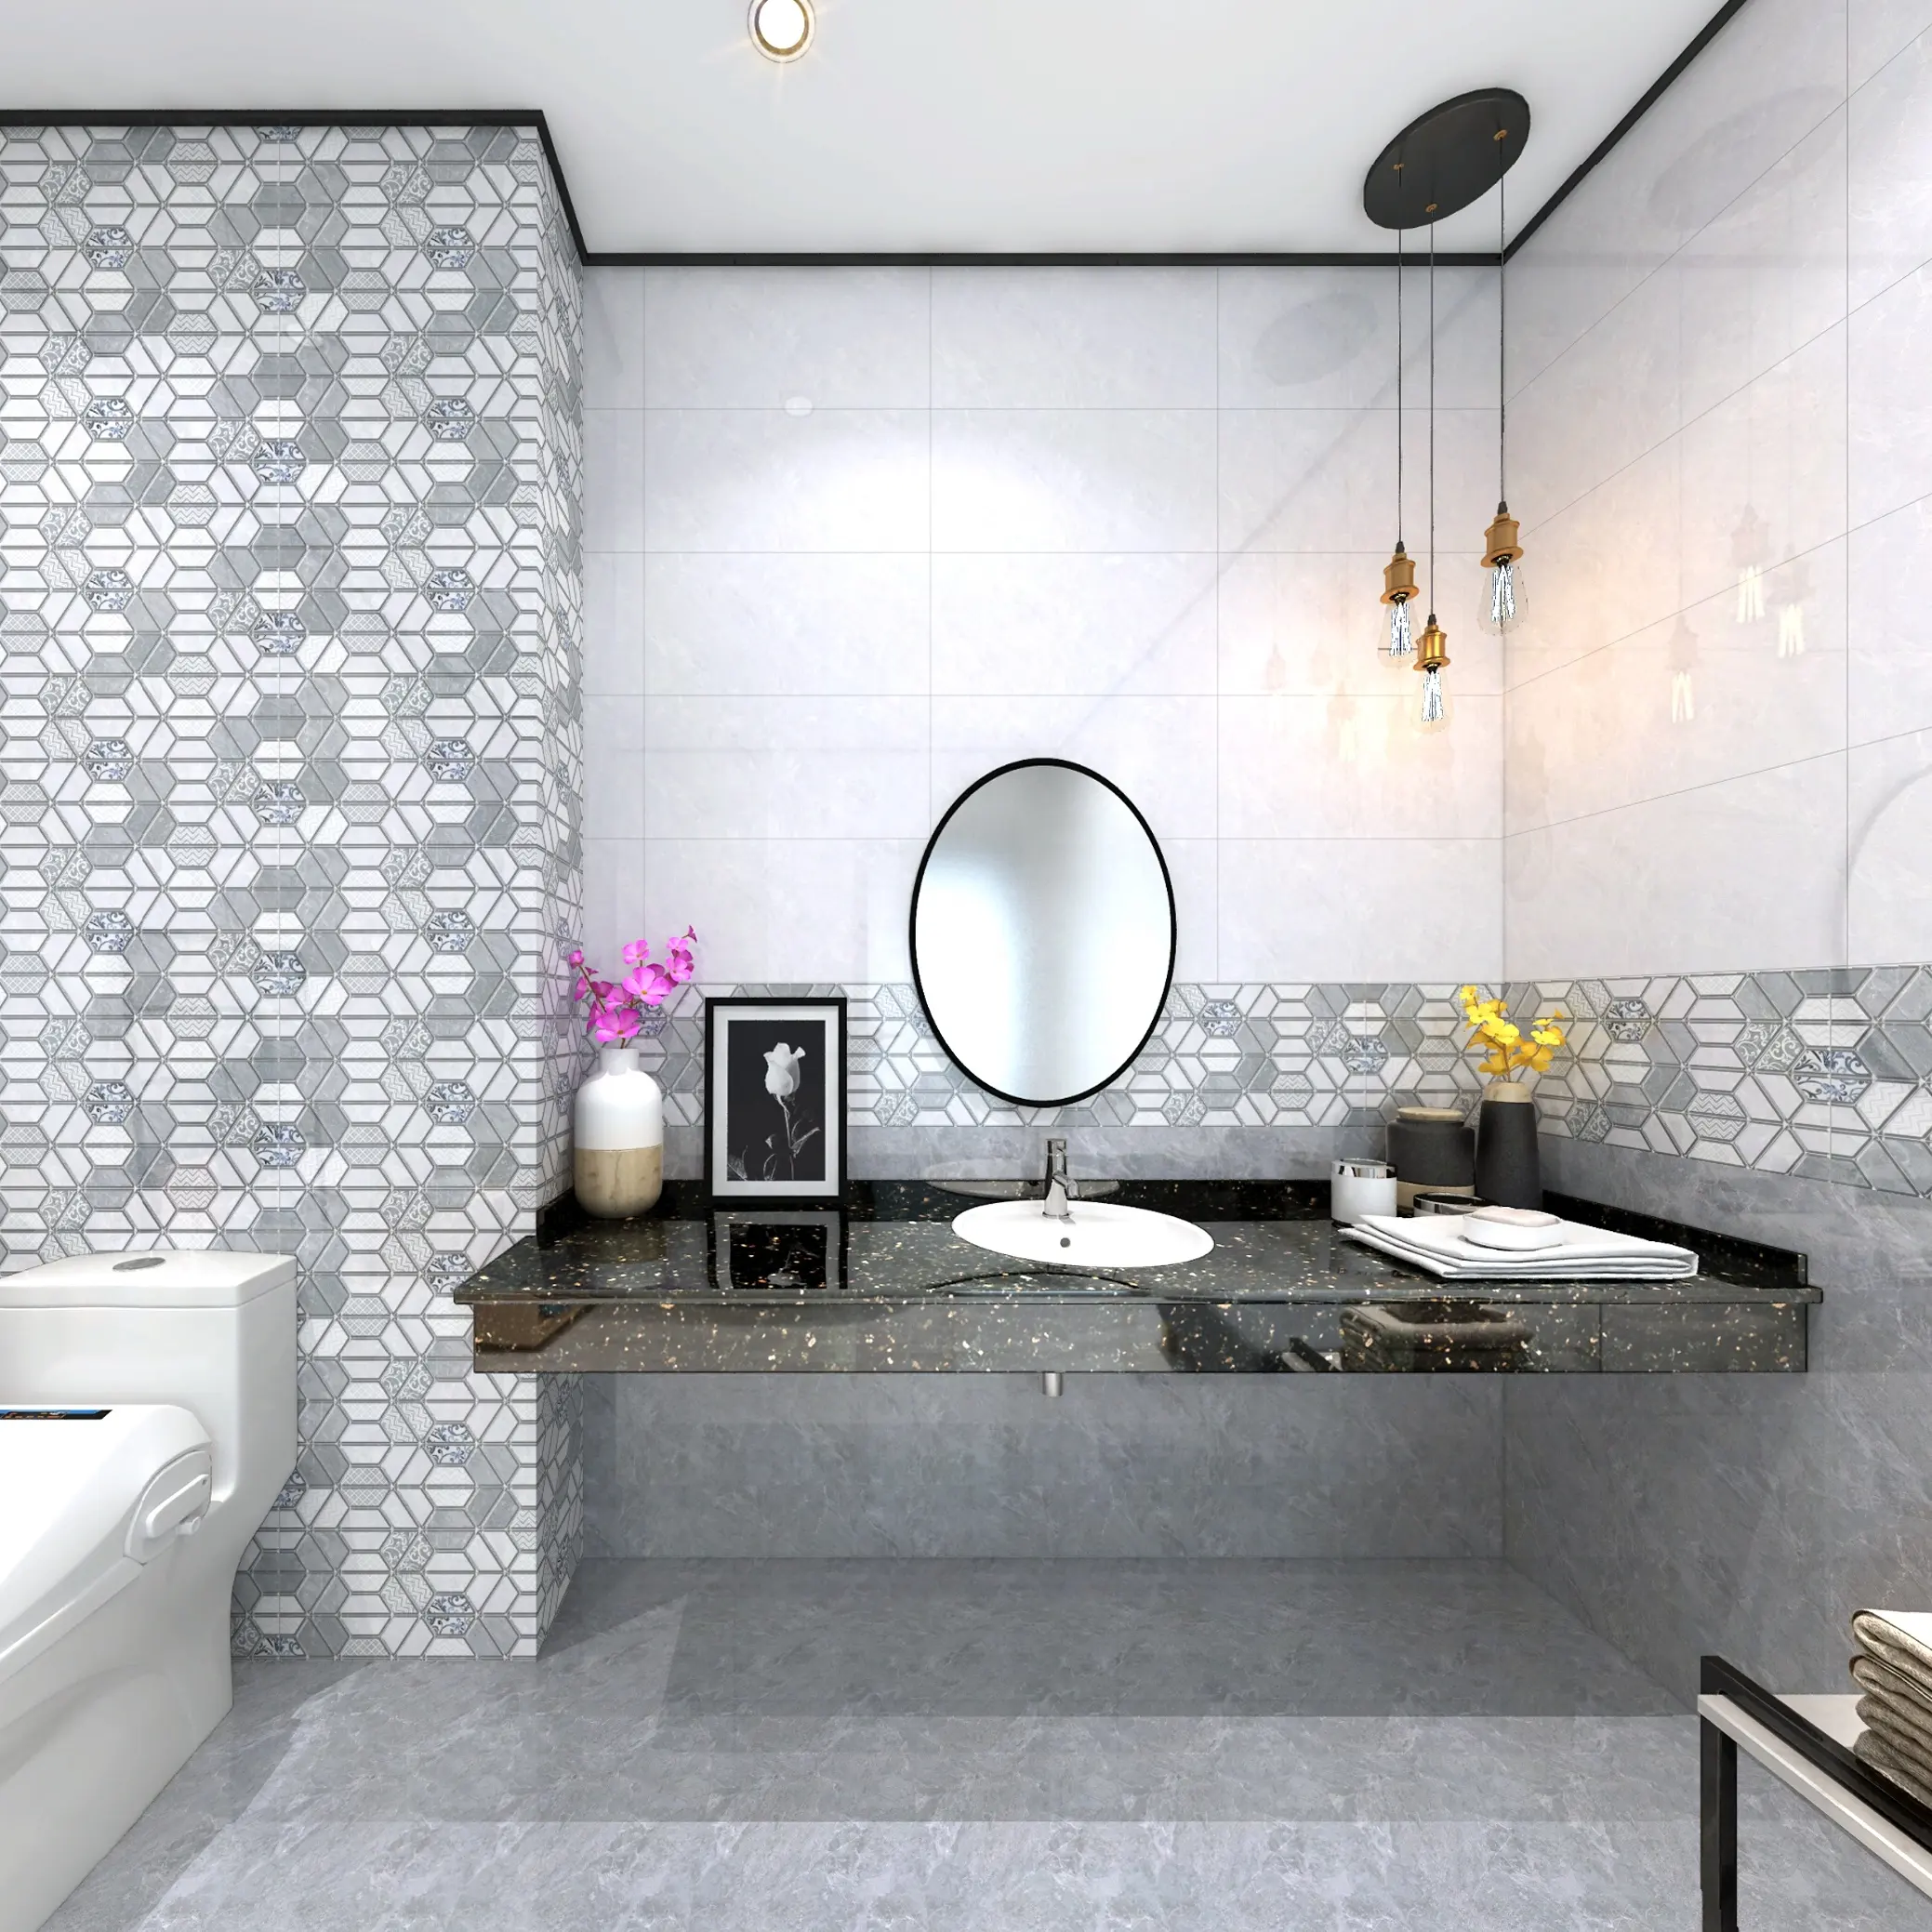 Più bello home decor vetrificati flash bagno cucina 300x600 muro di mattoni 300x300 Maldive di ceramica pavimento di piastrelle